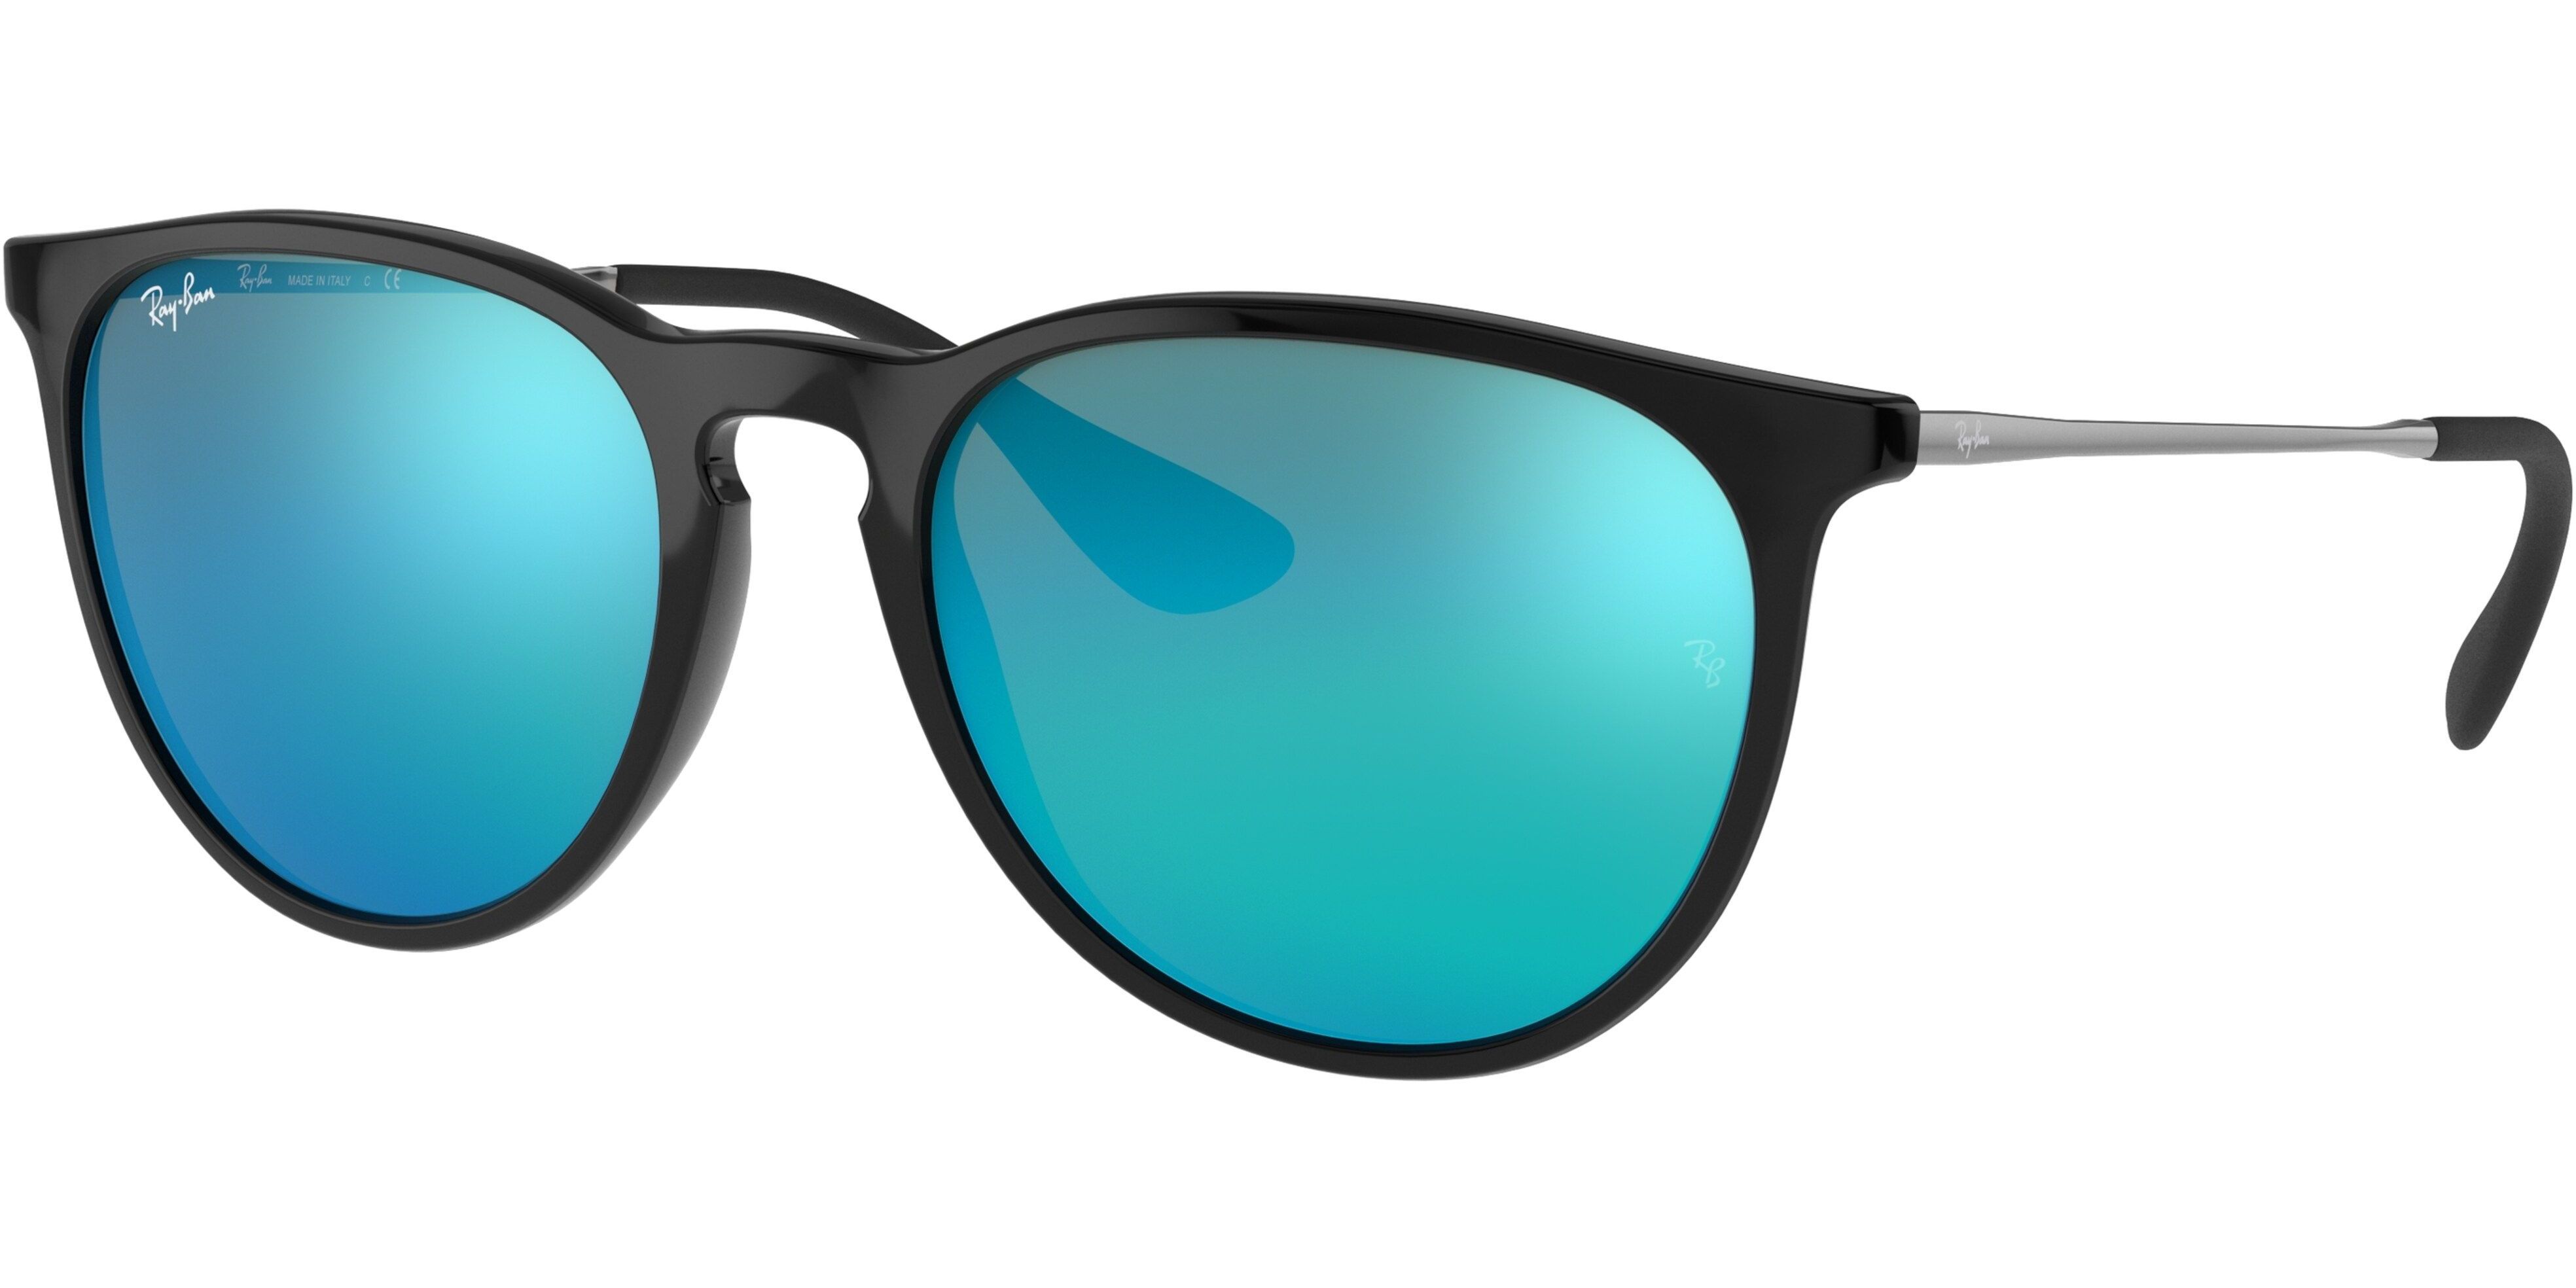 Sluneční brýle Ray-Ban® model 4171, barva obruby černá lesk stříbrná, čočka modrá zrcadlo, kód barevné varianty 60155. 